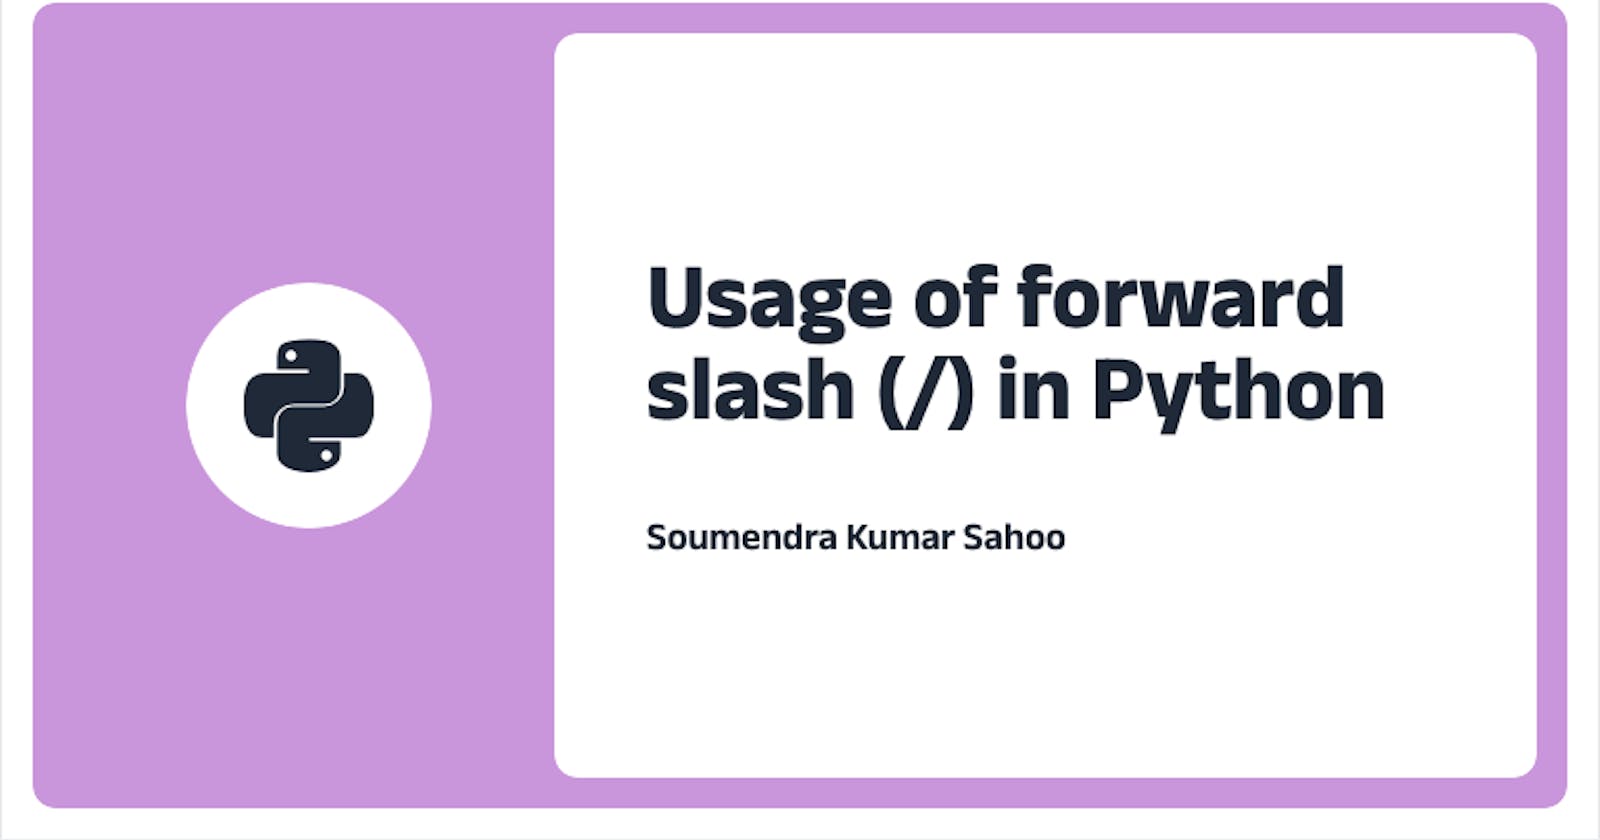 Usage of forward slash (/) in Python